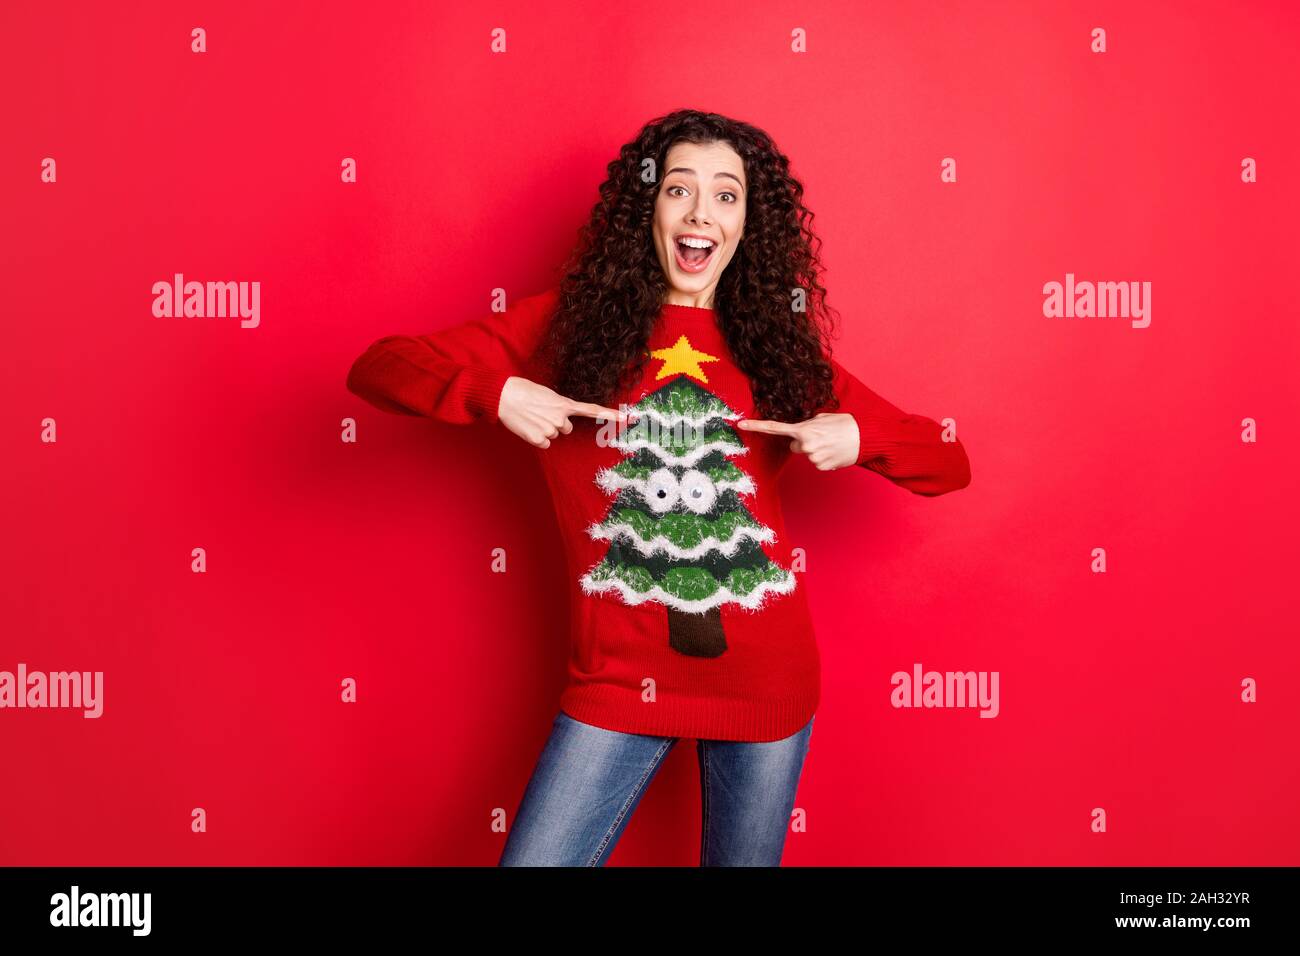 Buon Natale Jumper.Funny Christmas Jumper Immagini E Fotos Stock Alamy